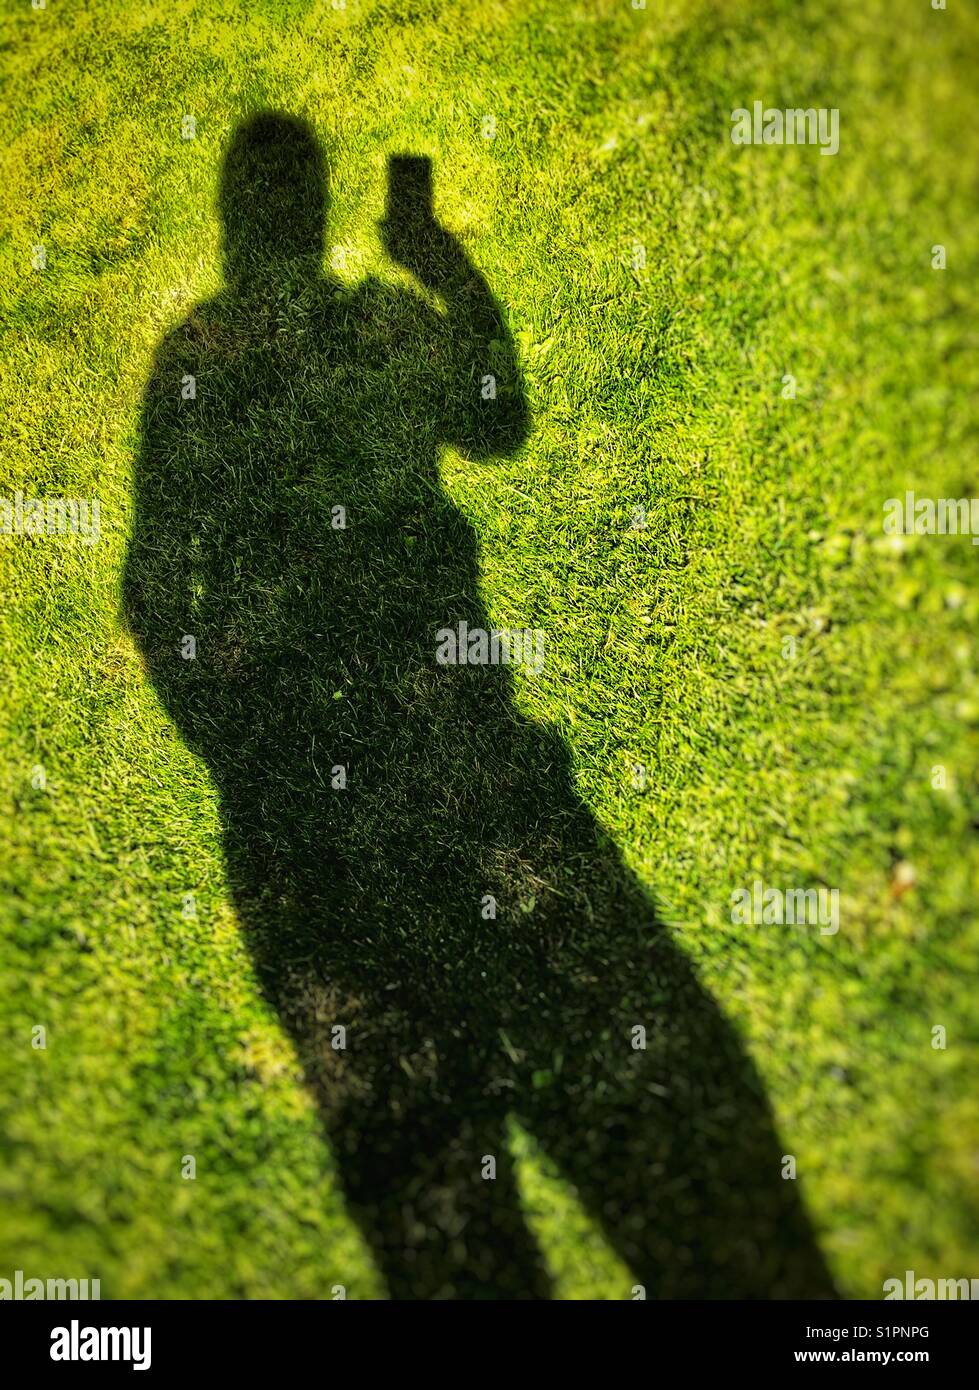 En prenant un des selfies mon ombre sur la pelouse Banque D'Images